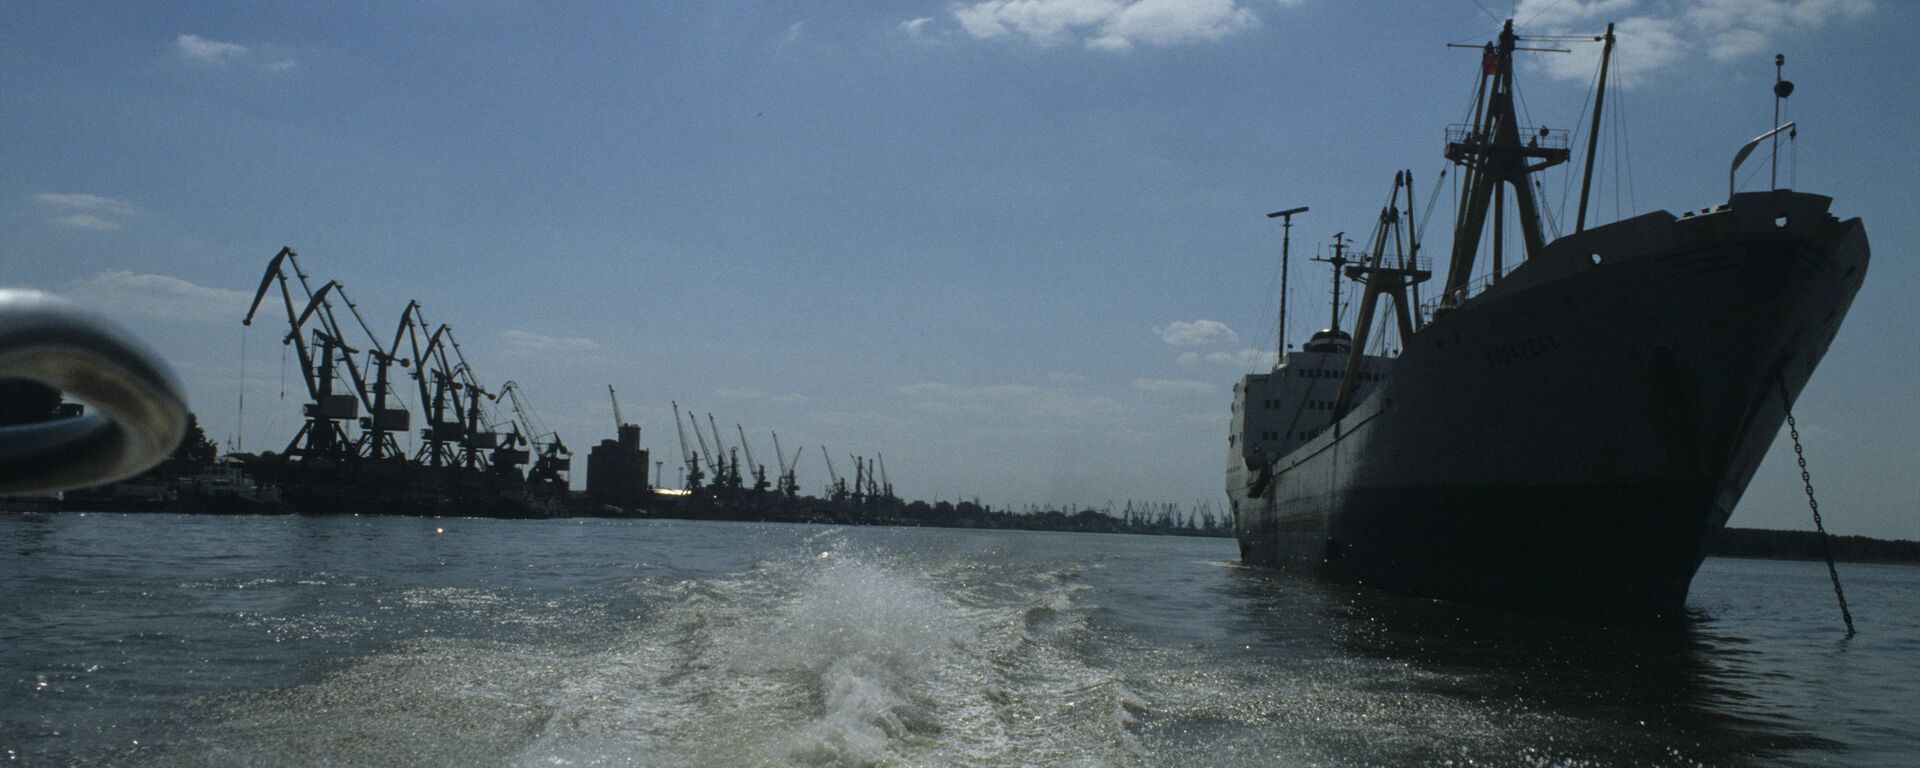 Измаильский морской торговый порт, расположенный в акватории Килийского устья реки Дунай (1985 год) - Sputnik Молдова, 1920, 18.03.2021